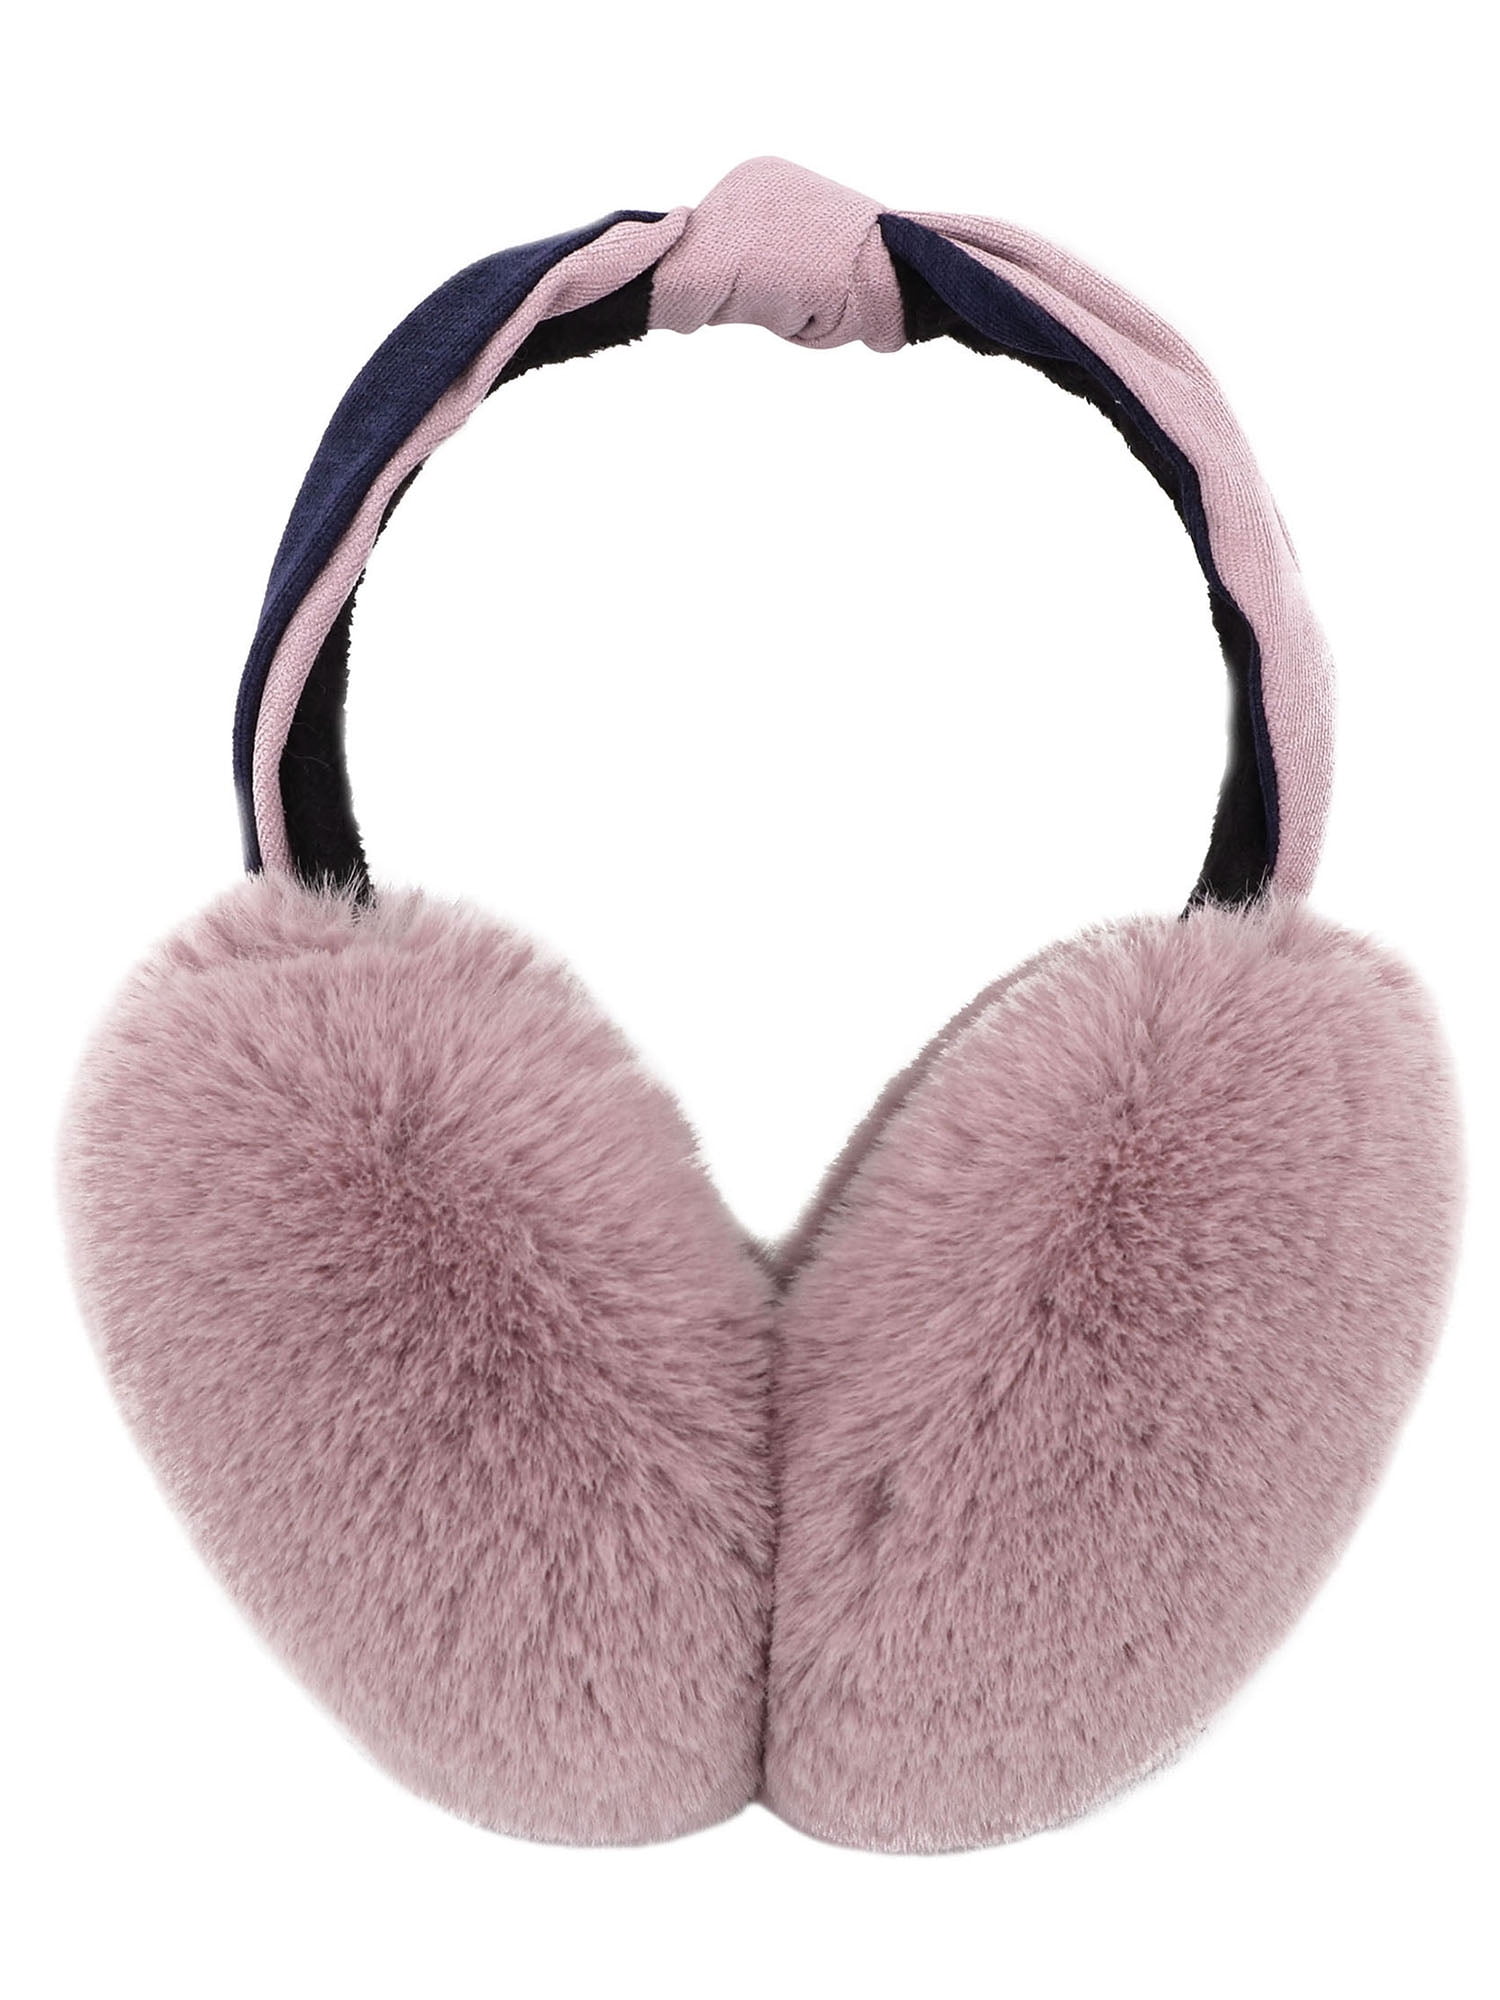 Winter Men's Women's Soft Terry Foldable Sport Ear Muffs Ear Covers